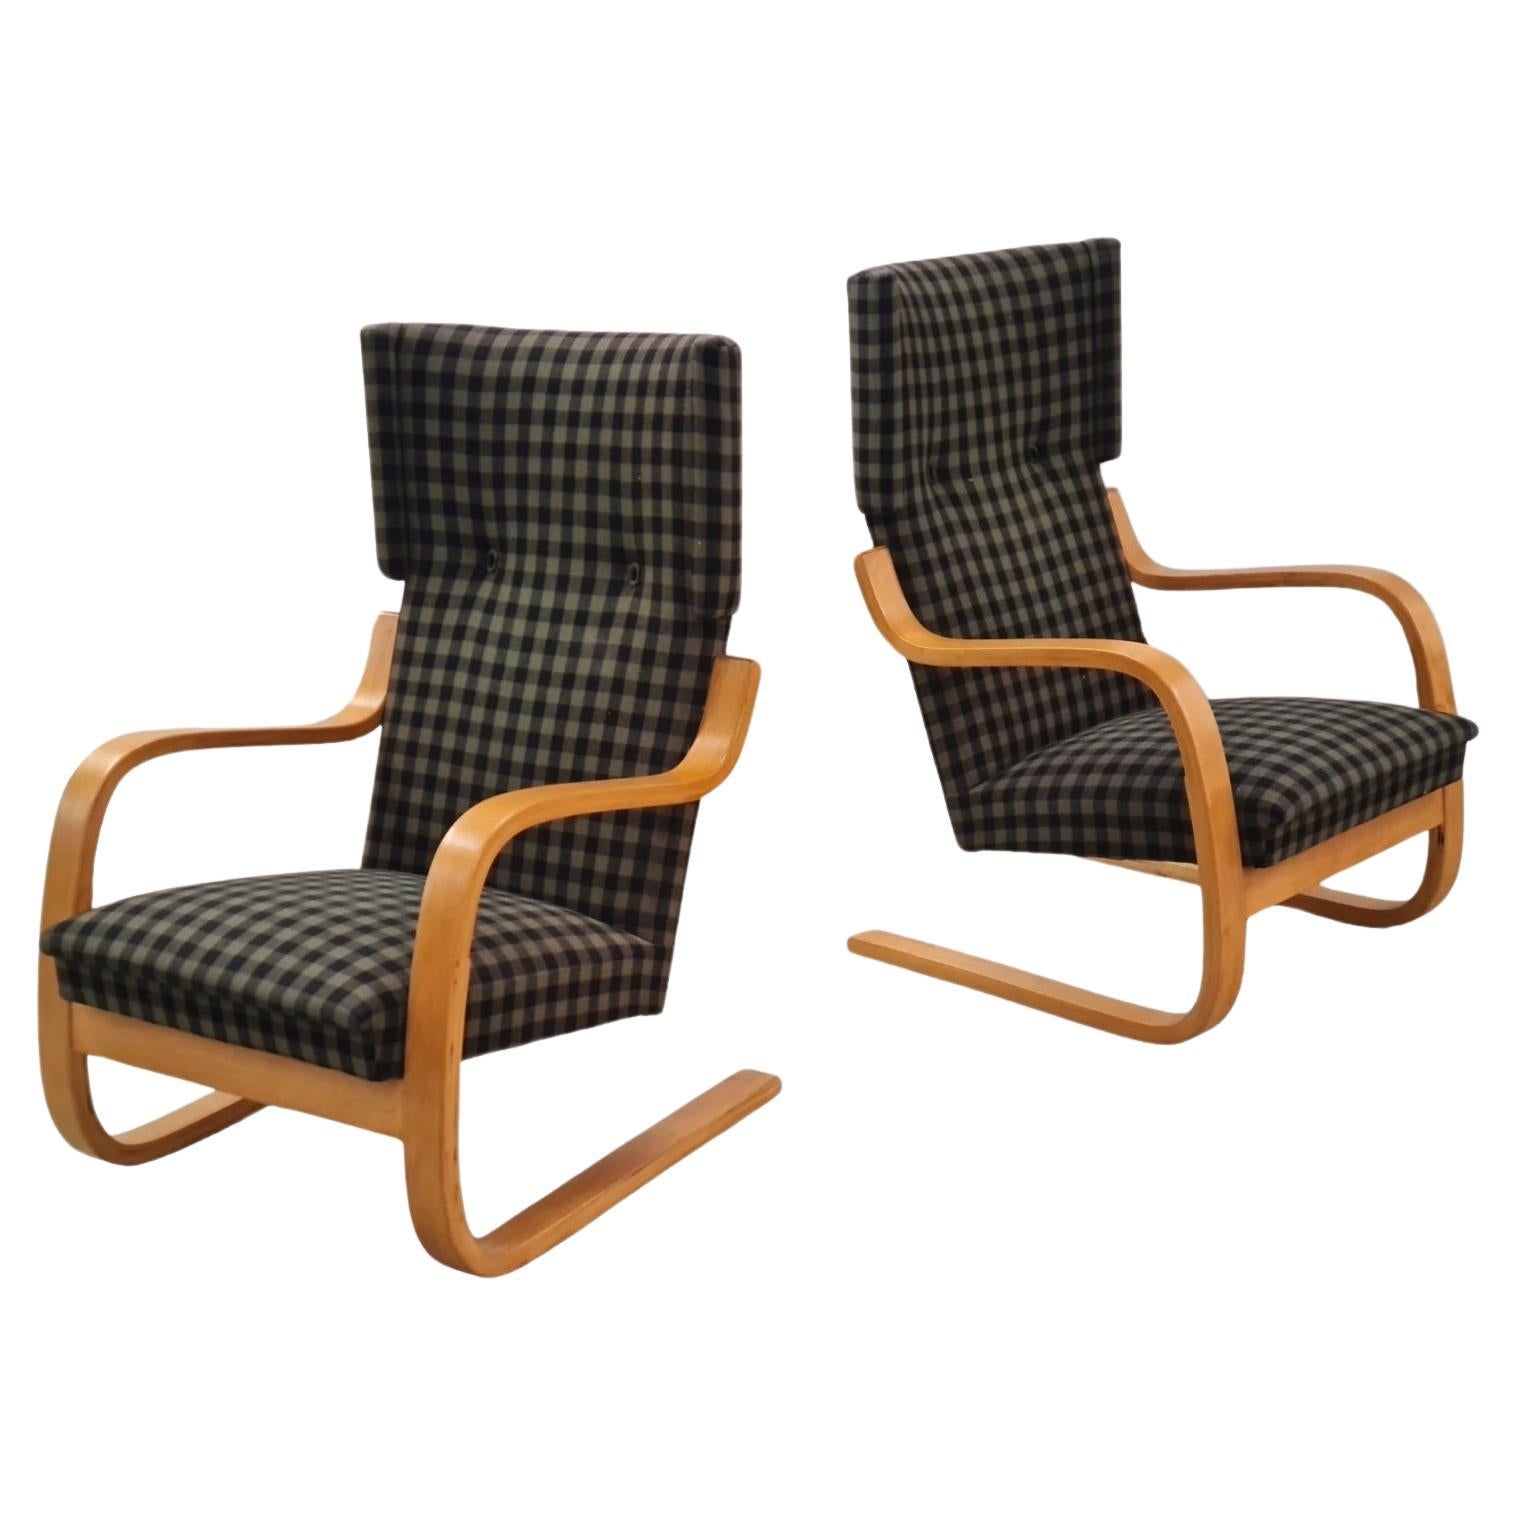 Paire de fauteuils luge Artek modèle 401, Alvar Aalto+Aalto, années 1950